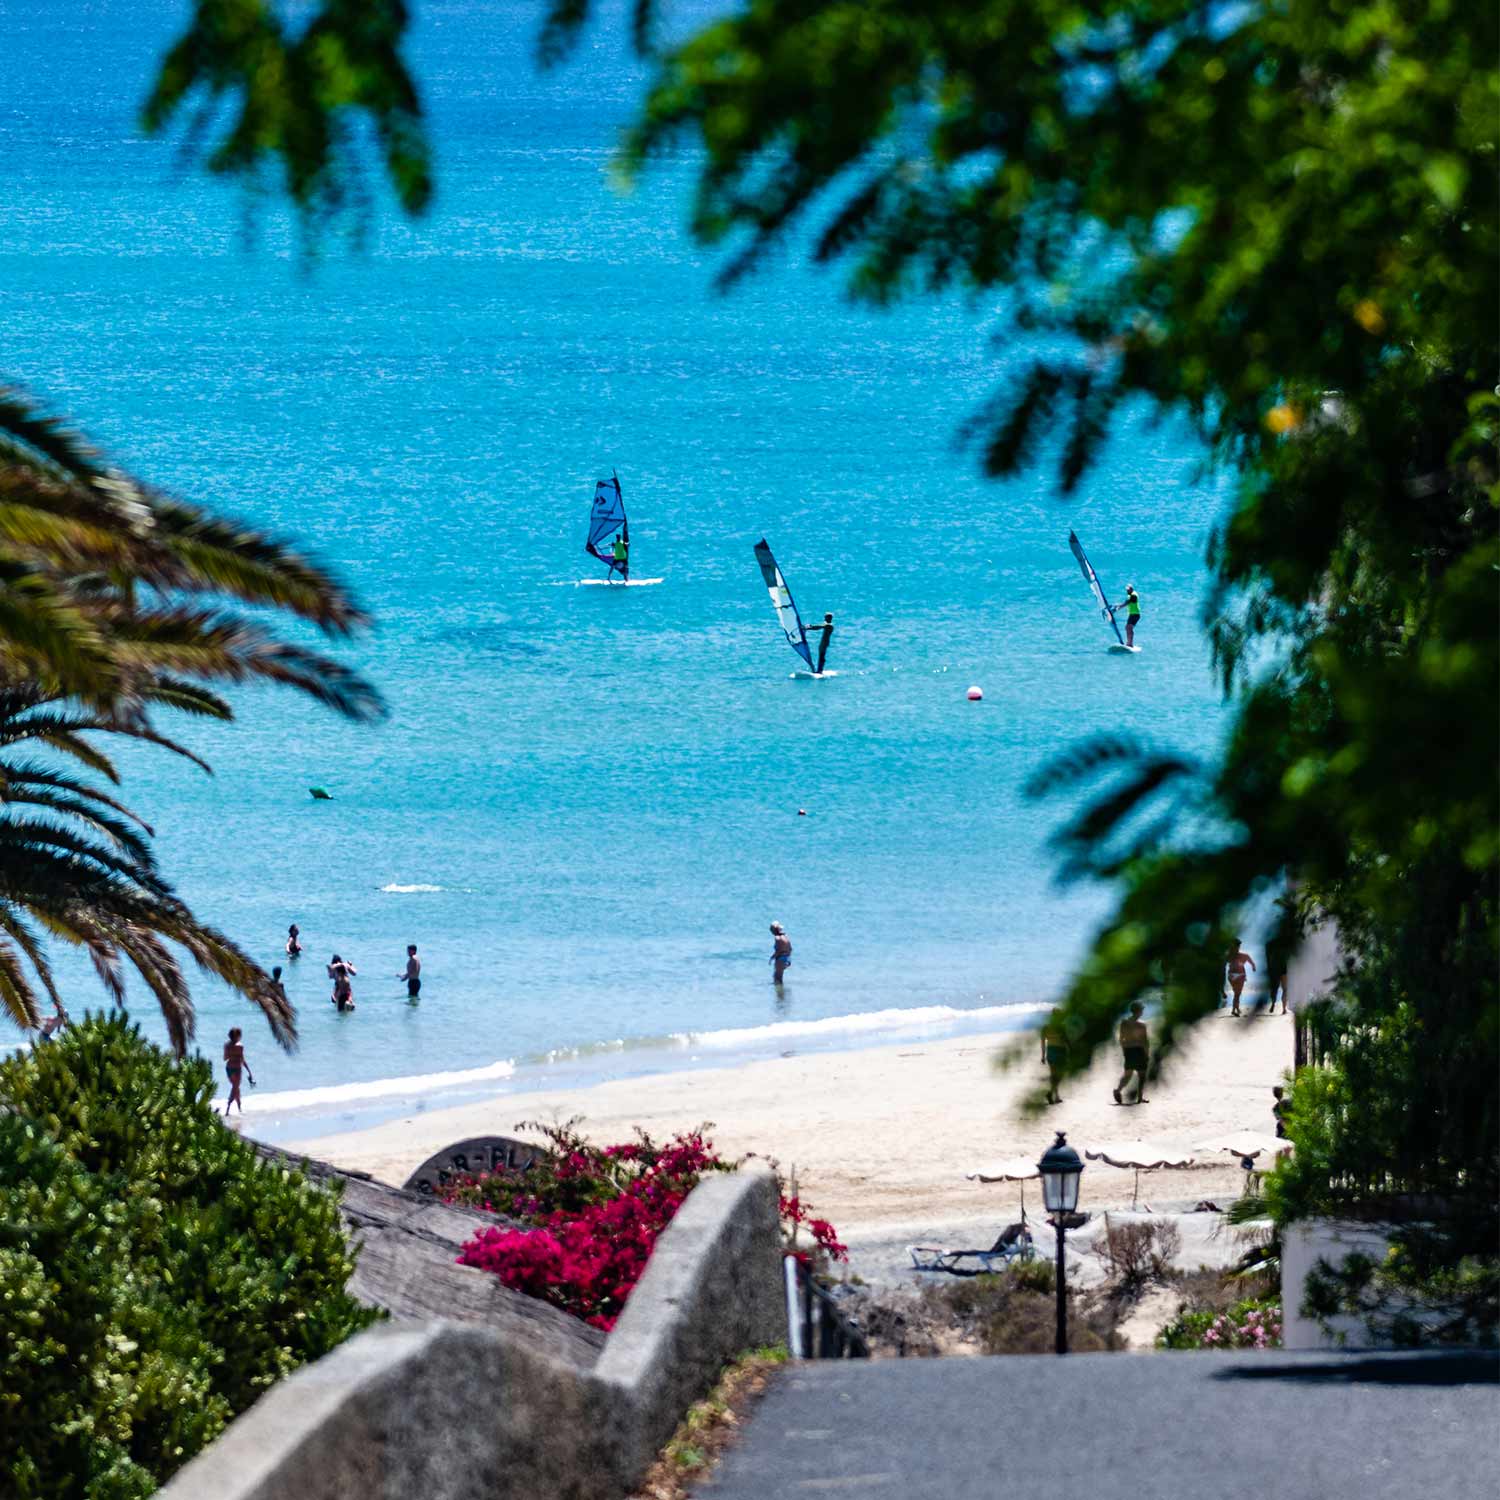 Vue d'une des arrivées sur la plage où se trouve le centre Ion Club Costa Calma et où naviguent plusieurs véliplanchistes, cette vue peut être comparée à celles de Maui. 